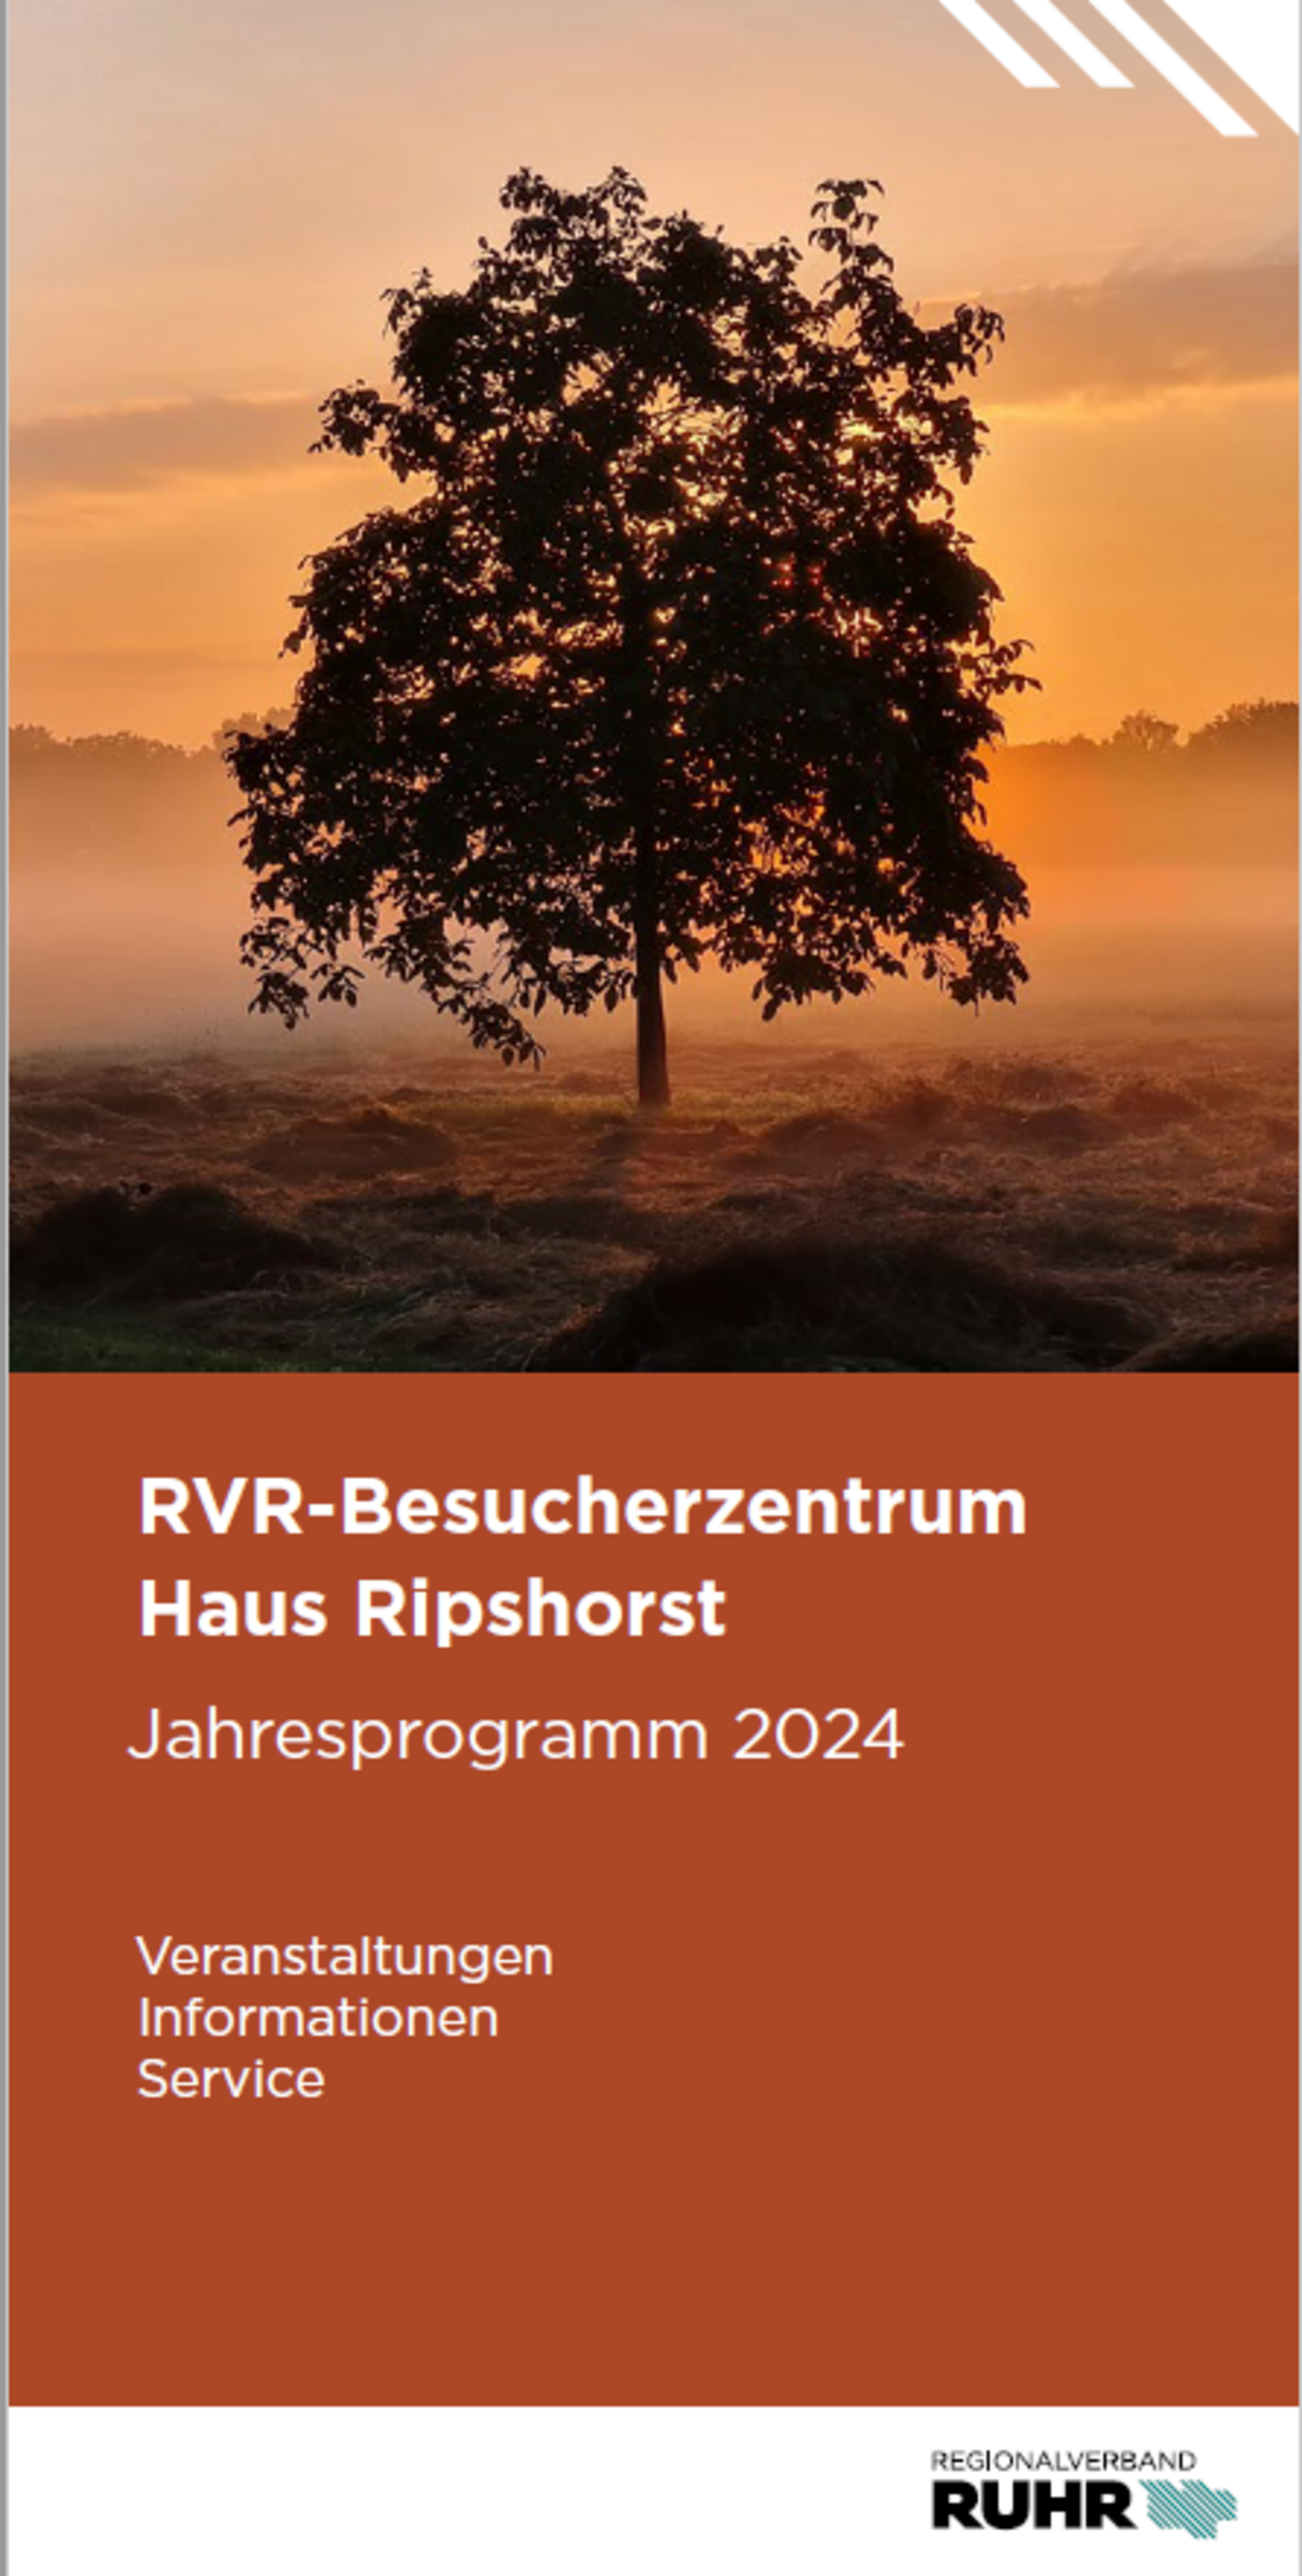 Programmheft RVR-Besucherzentrum Haus Ripshorst 2024